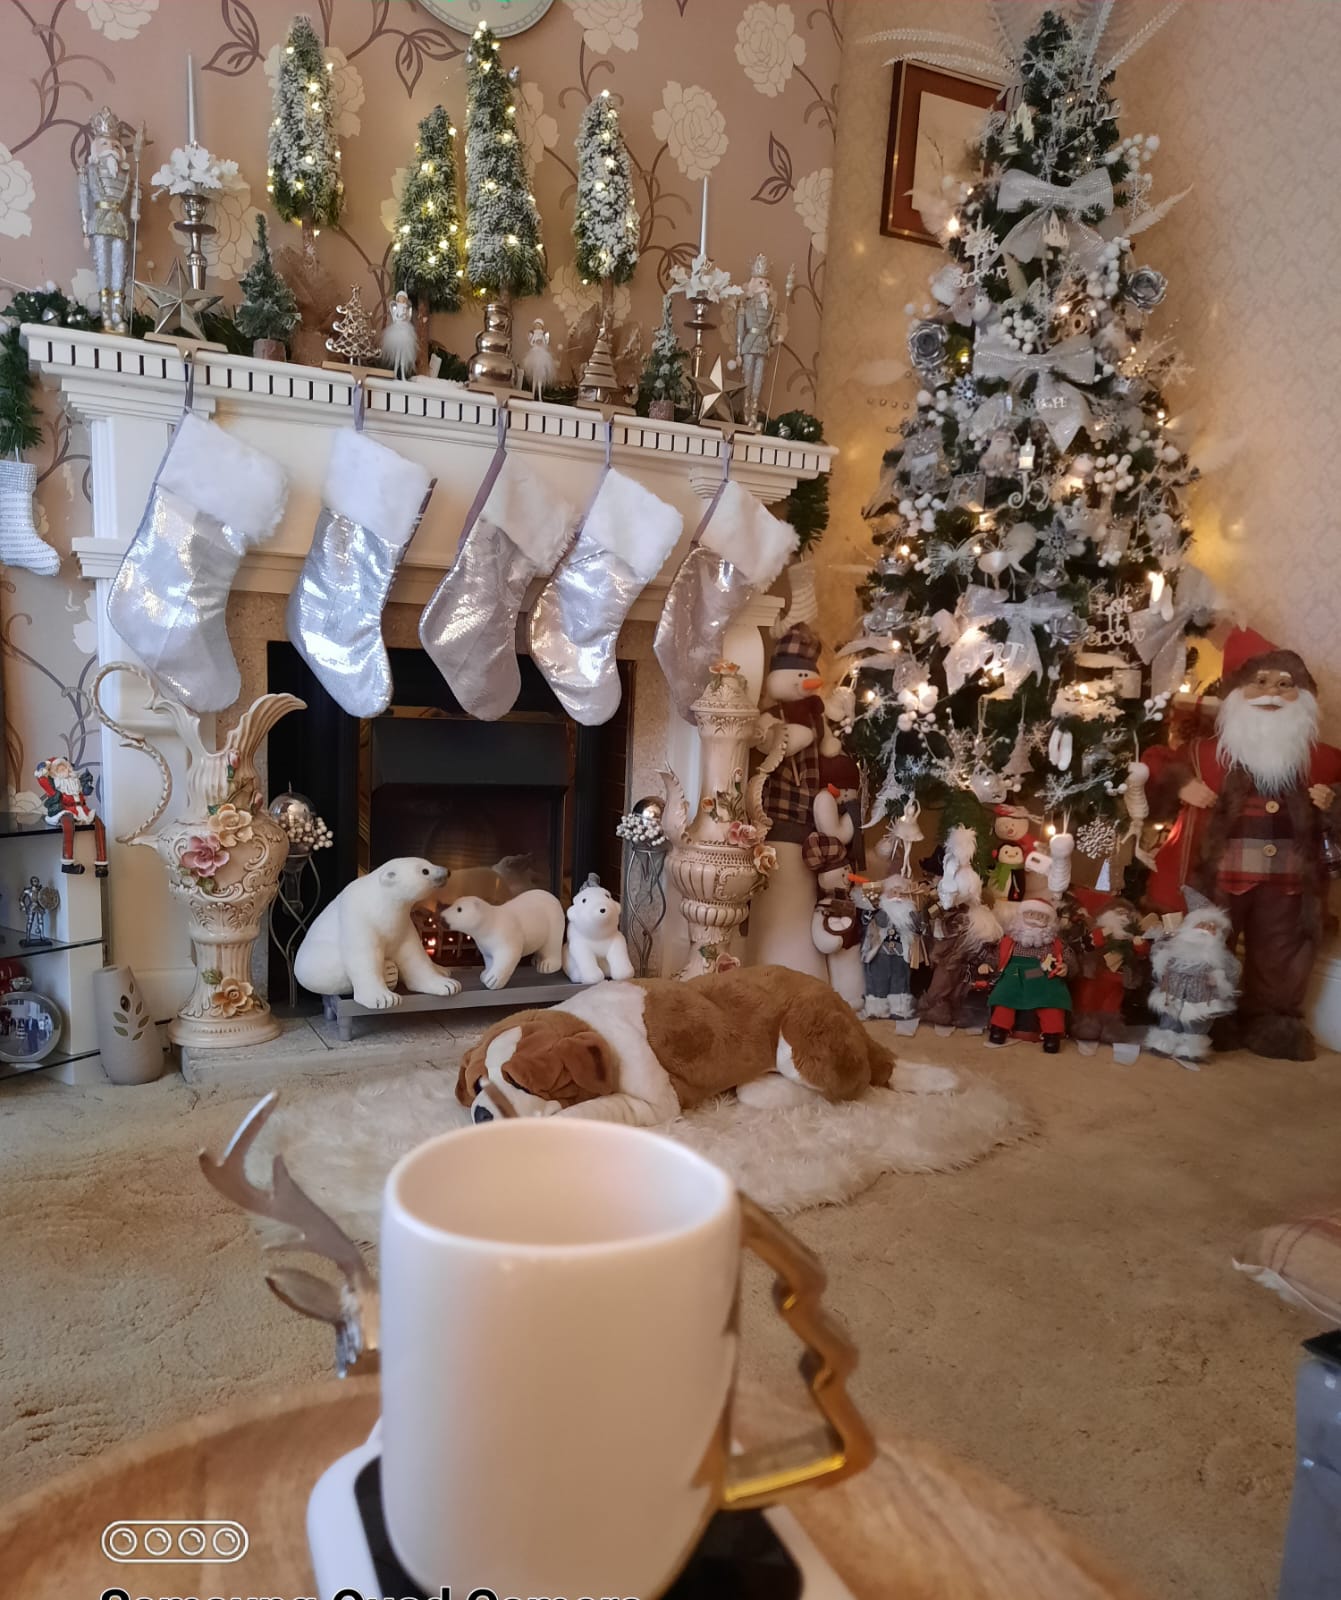 white mug with gold handle on christmas living room homeware